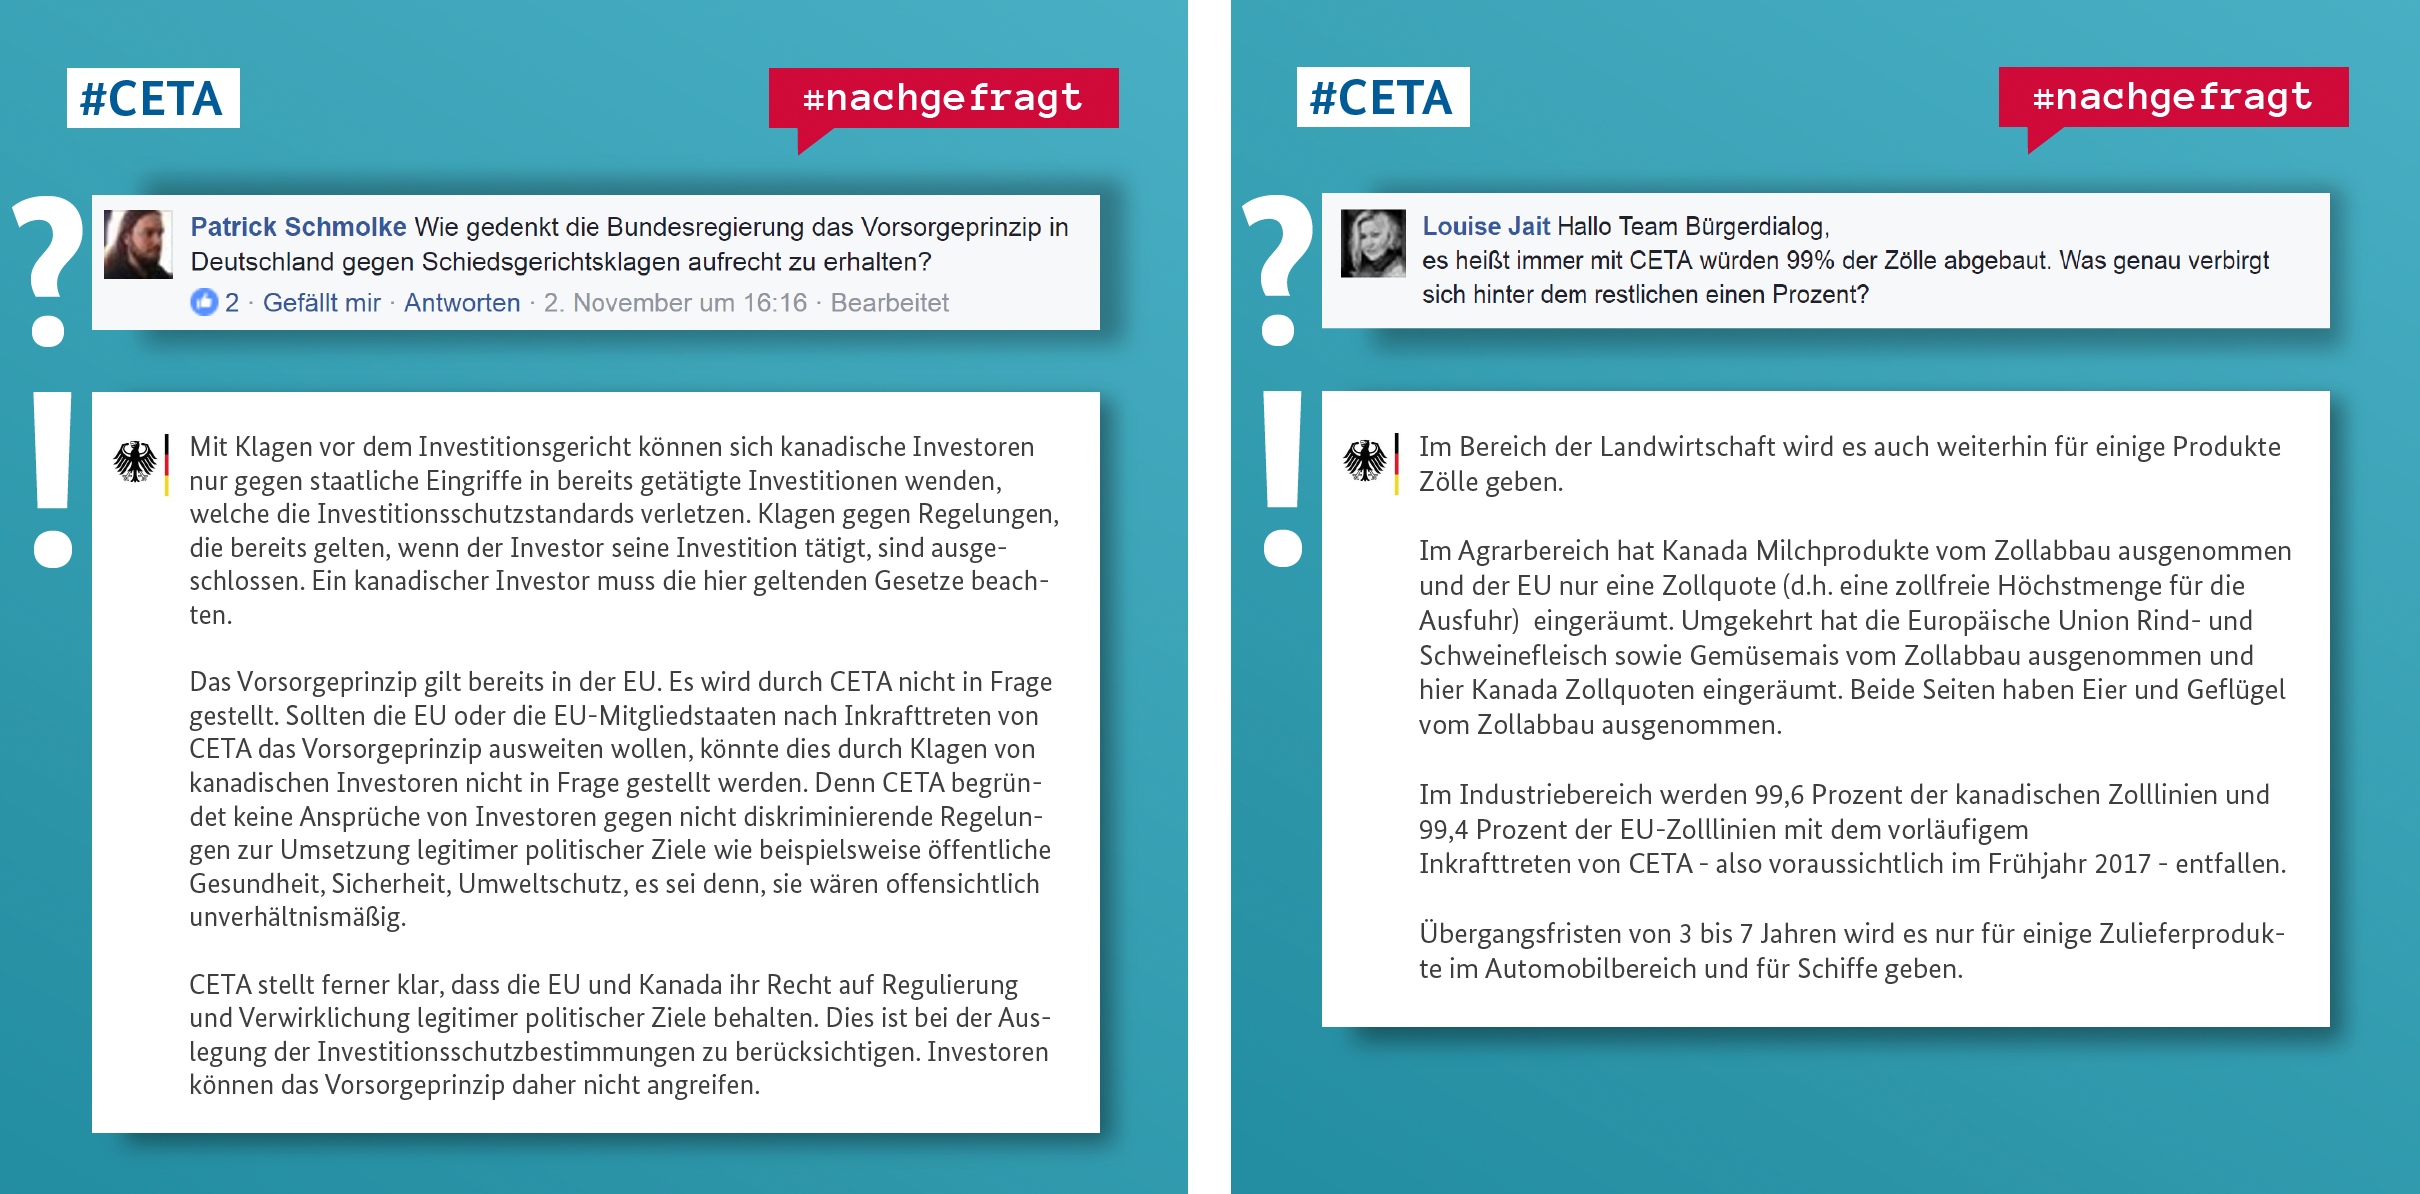 Beispiele von Fragen und Antworten zum Thema CETA